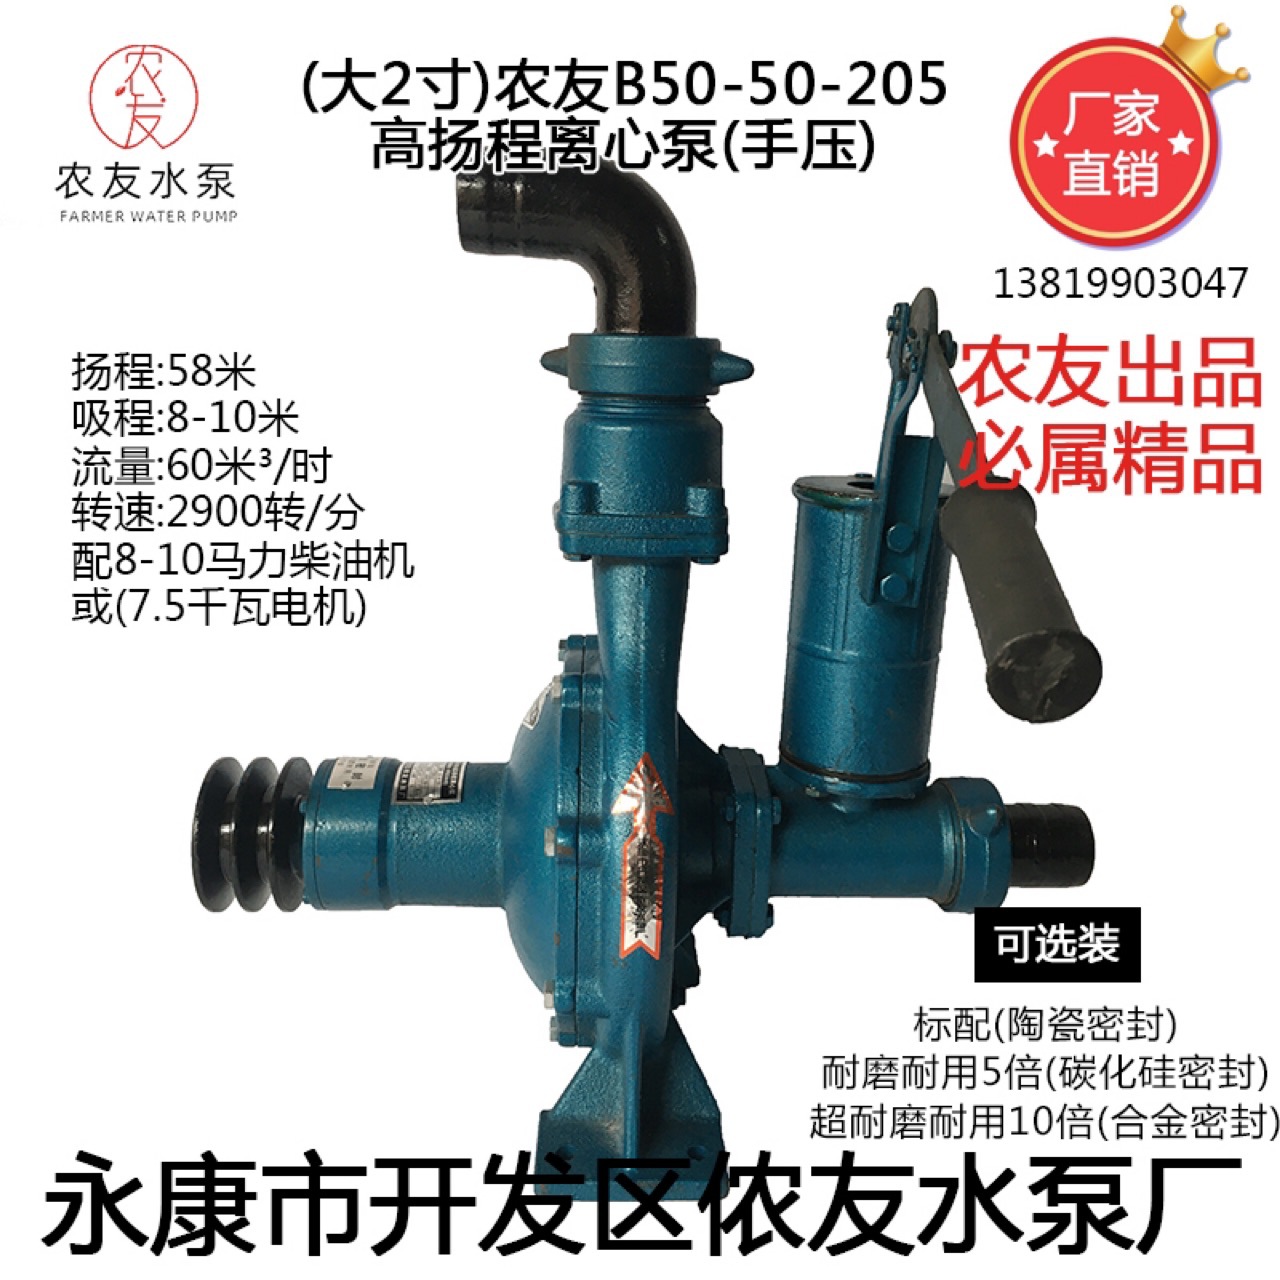 （大2寸）农友B50-50-205手压离心泵水泵高扬程58m 农用农田灌溉